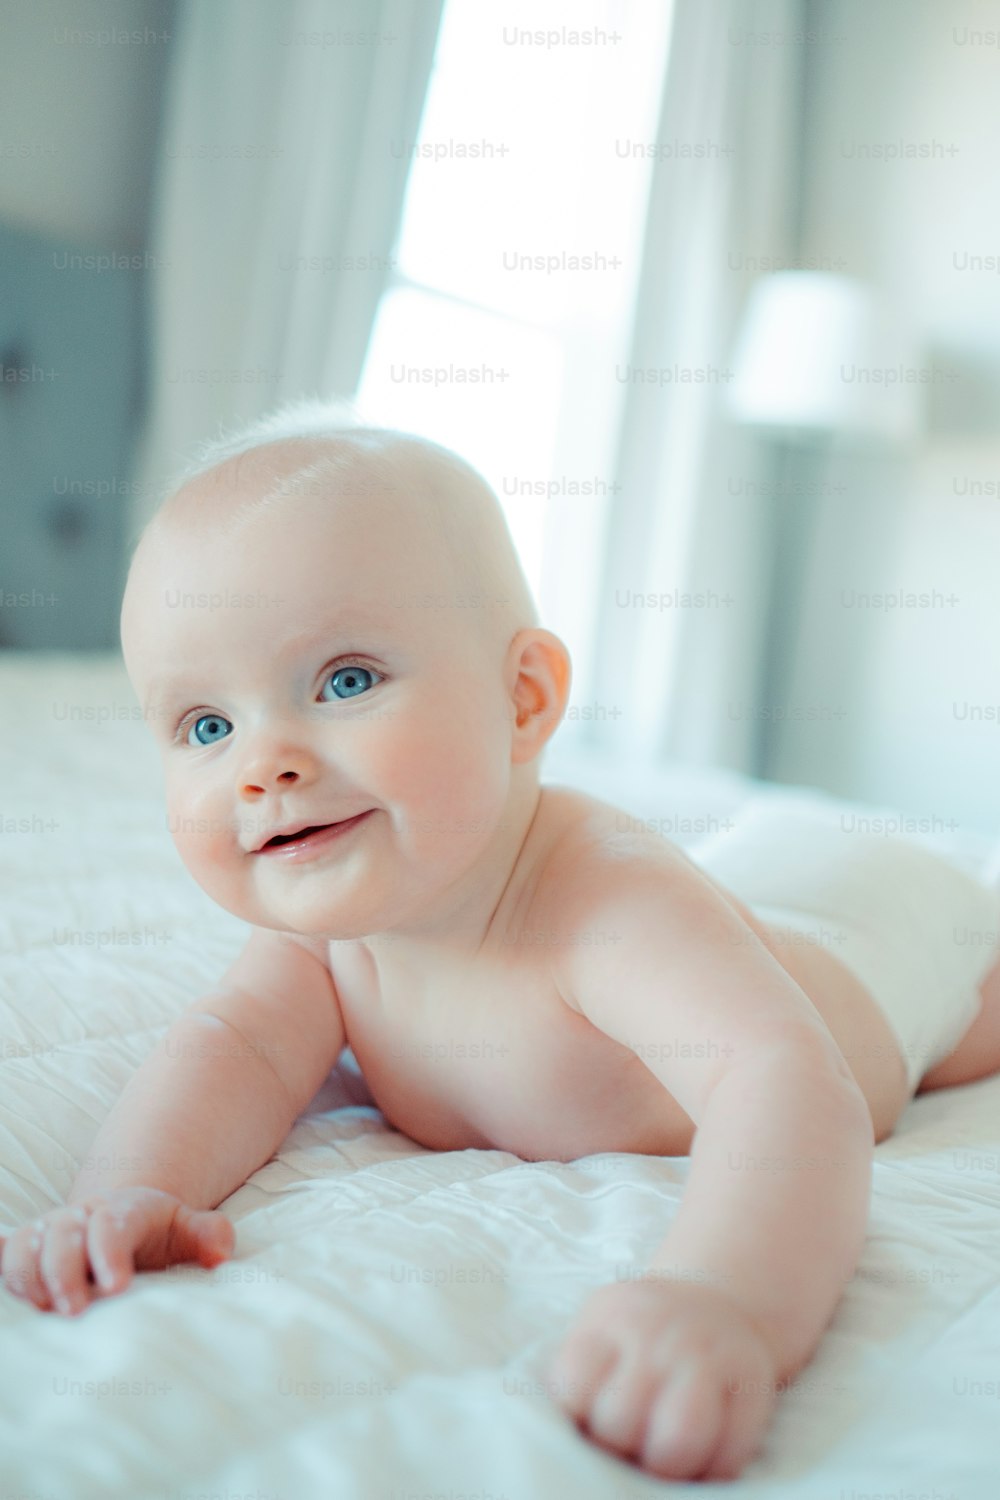 Un bebé sonriente acostado en una cama